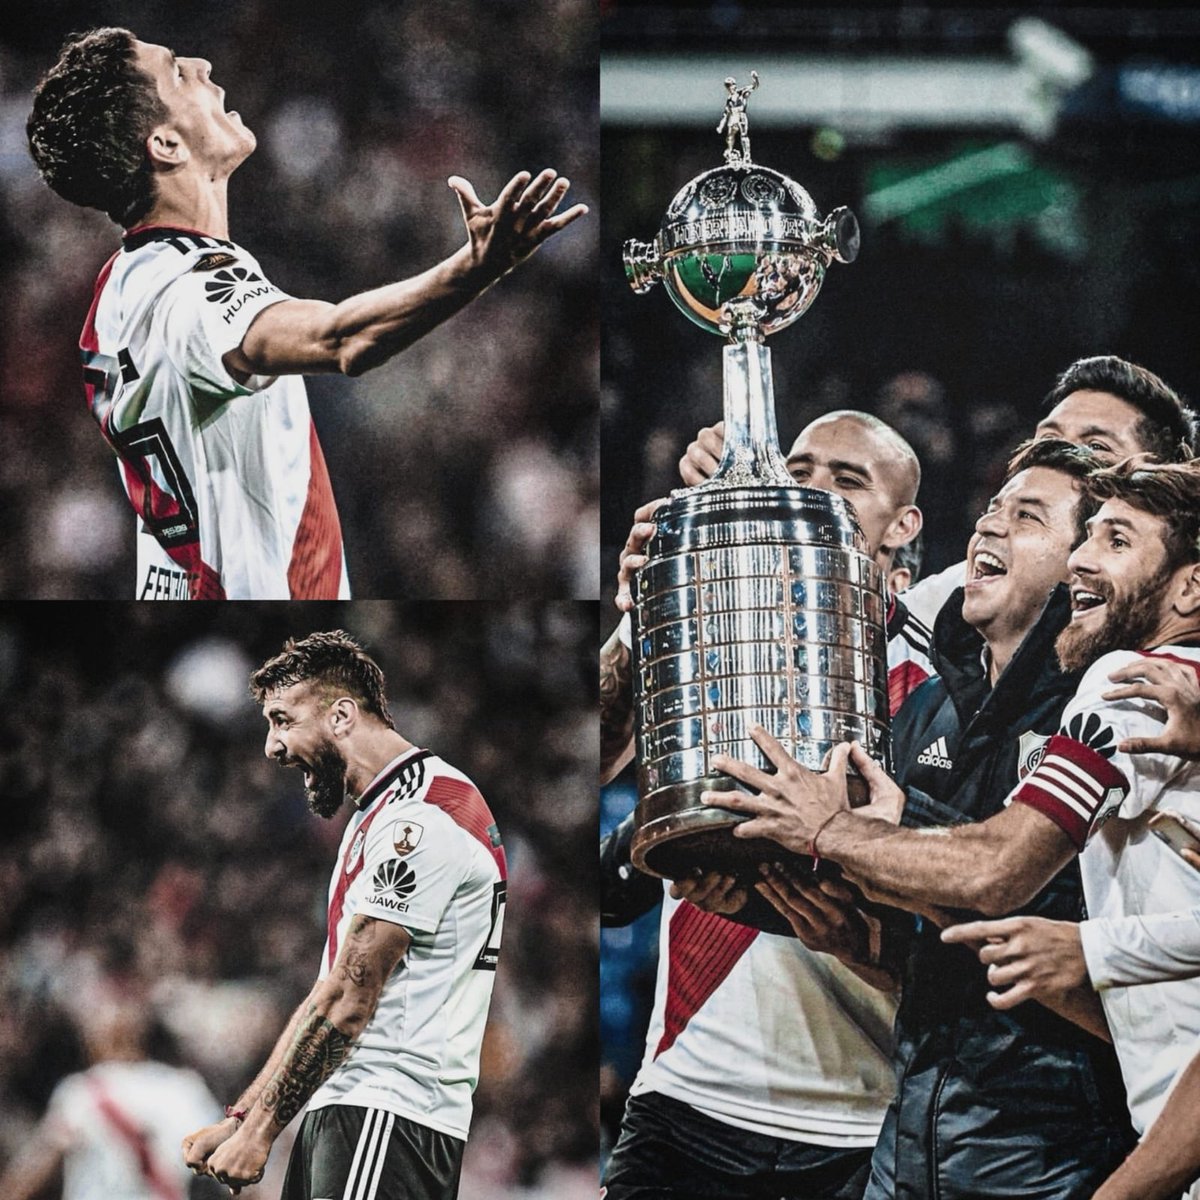 🐔 [ABRO HILO] El recorrido de River Plate para ser «Campeón de América» en 2018. 

Inolvidable, única e histórica. 🏆

Pónganse cómodos y disfruten. Cine puro. 🍿